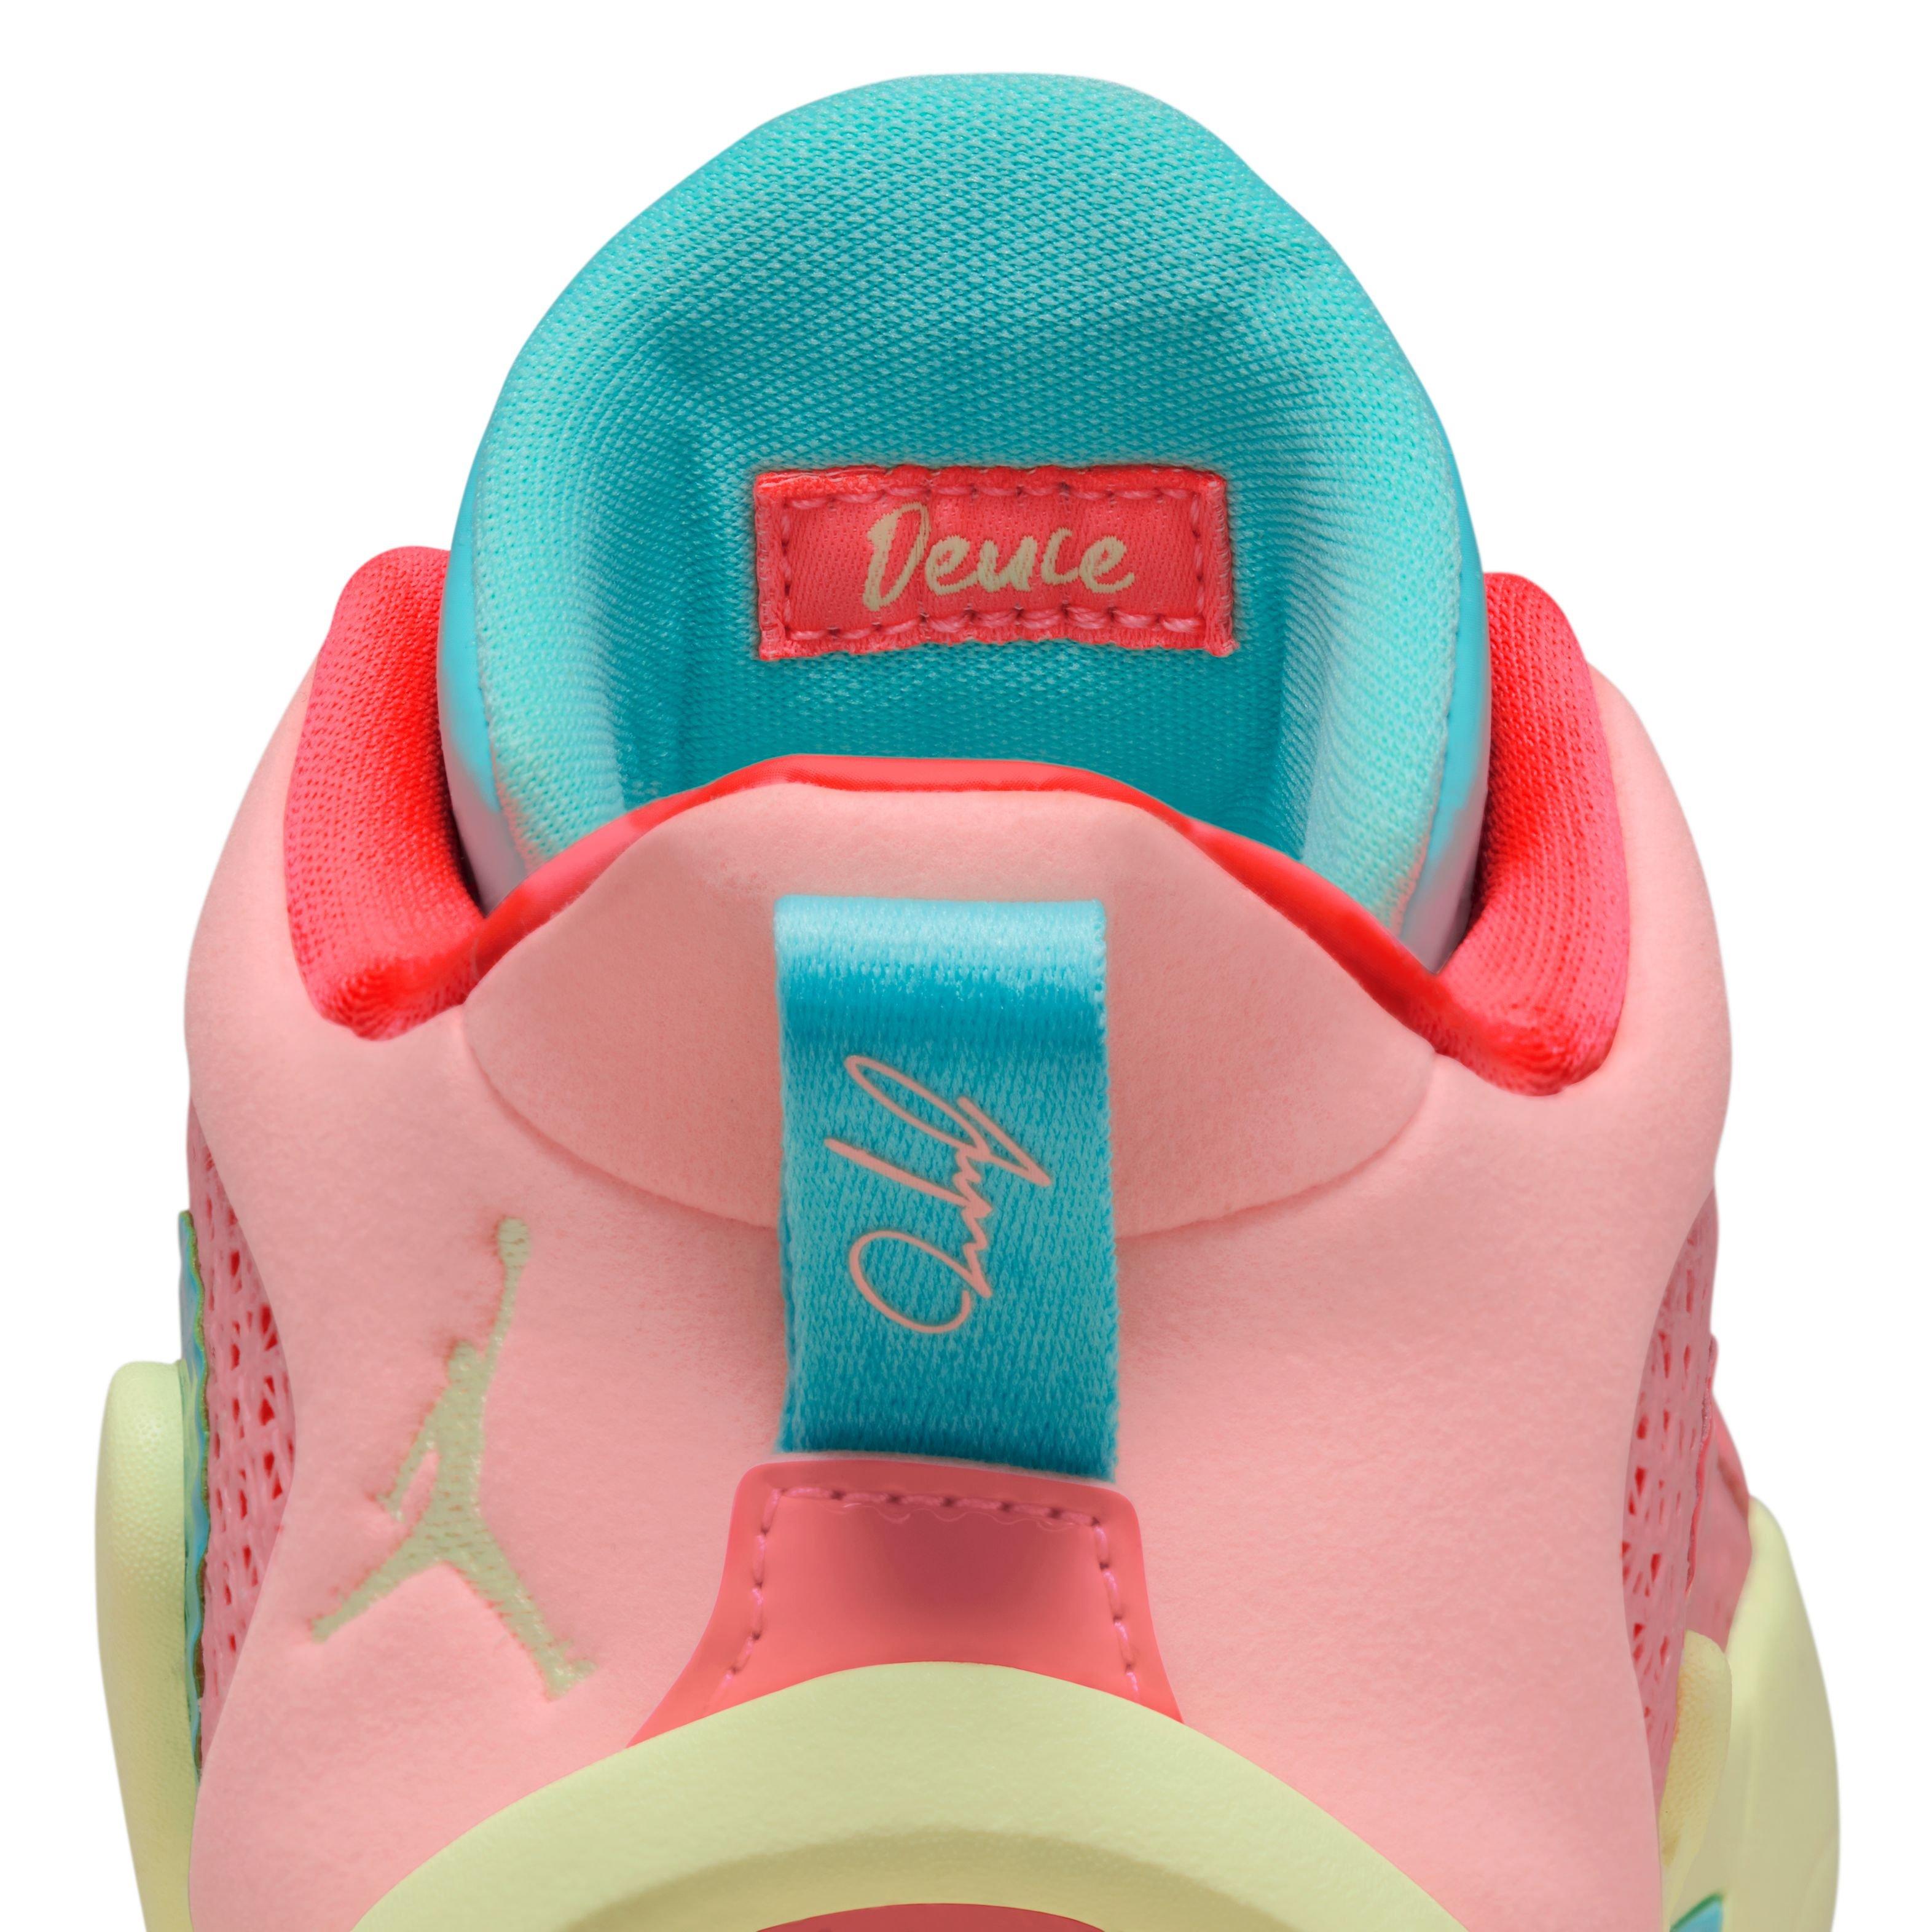 Jayson Tatum: Jayson Tatum x Jordan Tatum 1 “Pink Lemonade” shoes